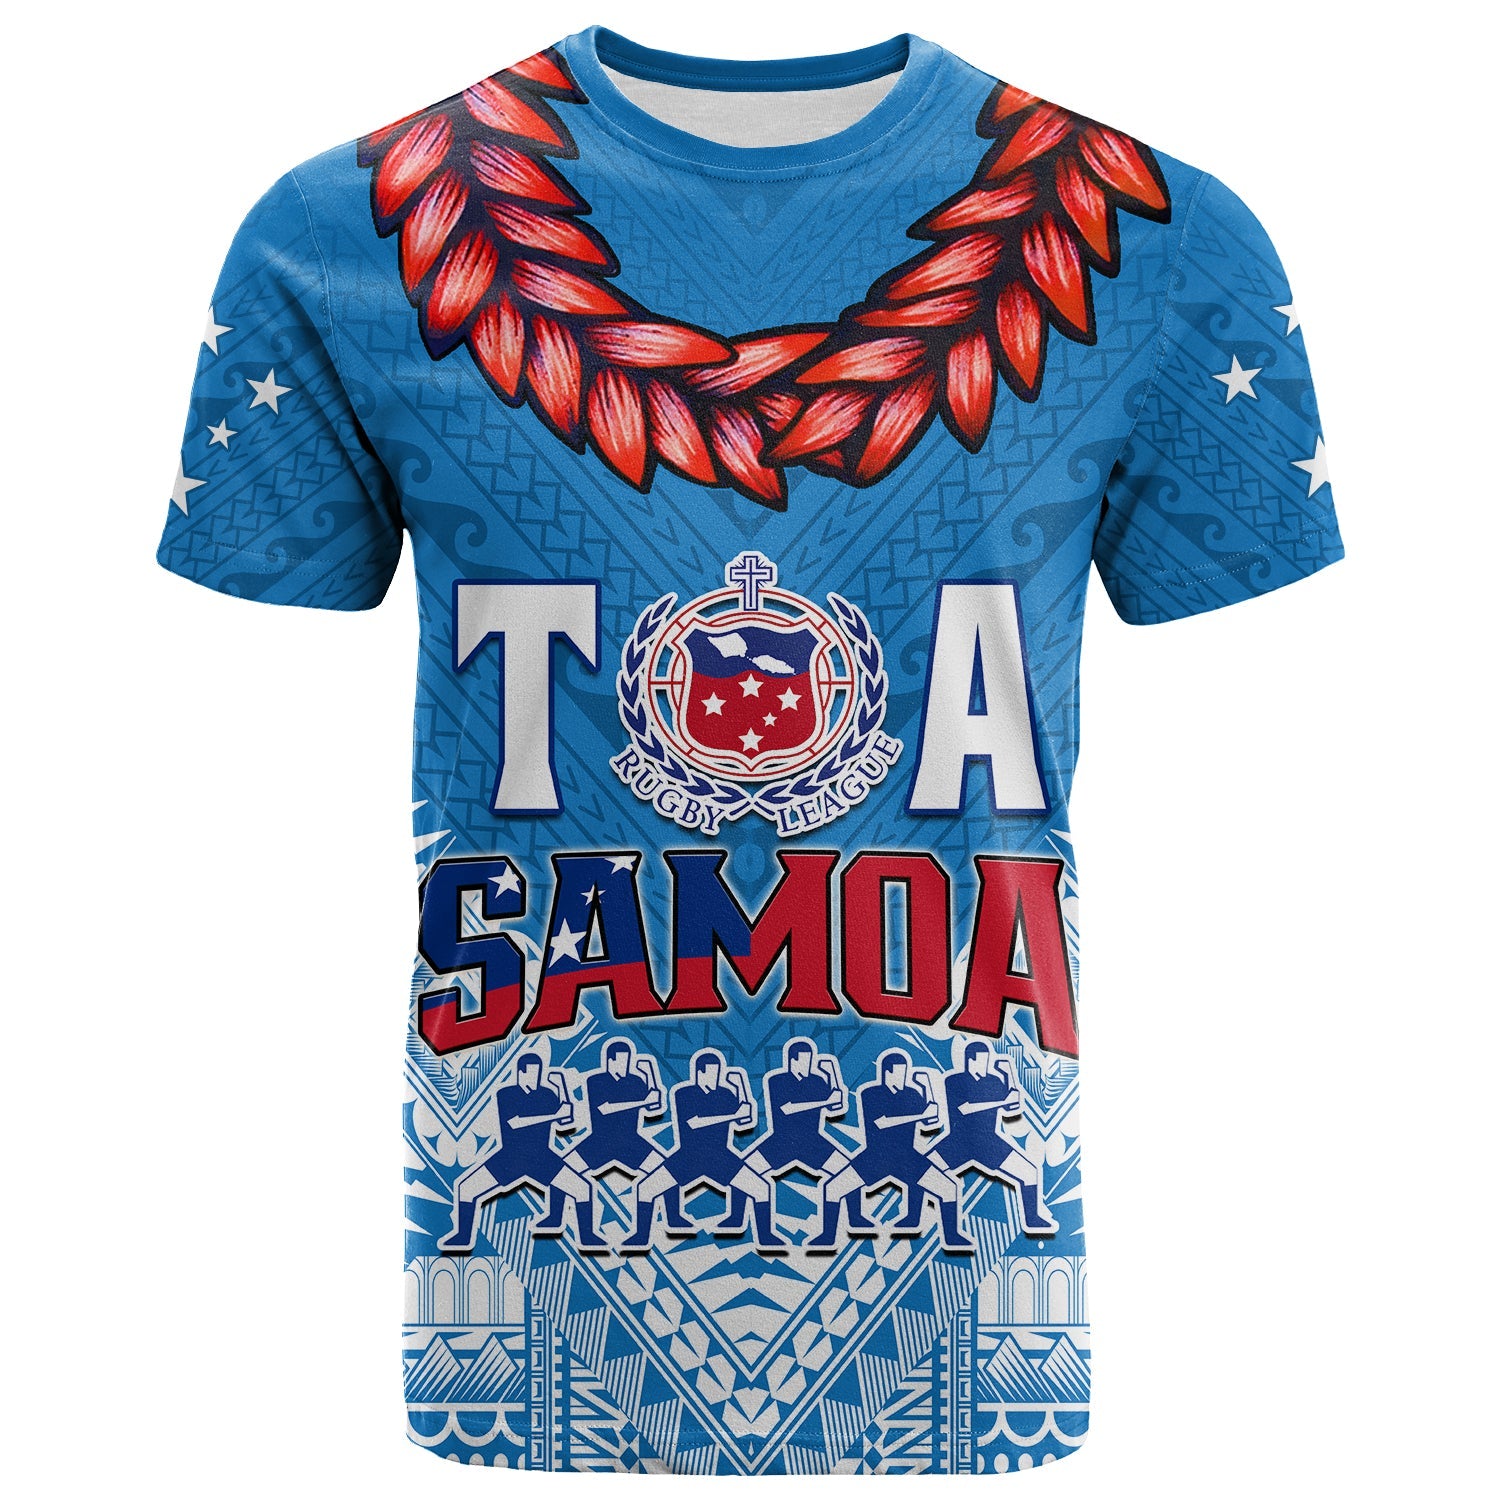 Toa Samoa Rugby T Shirt Manu Siva Tau Style Ulafala LT13 Blue - Polynesian Pride